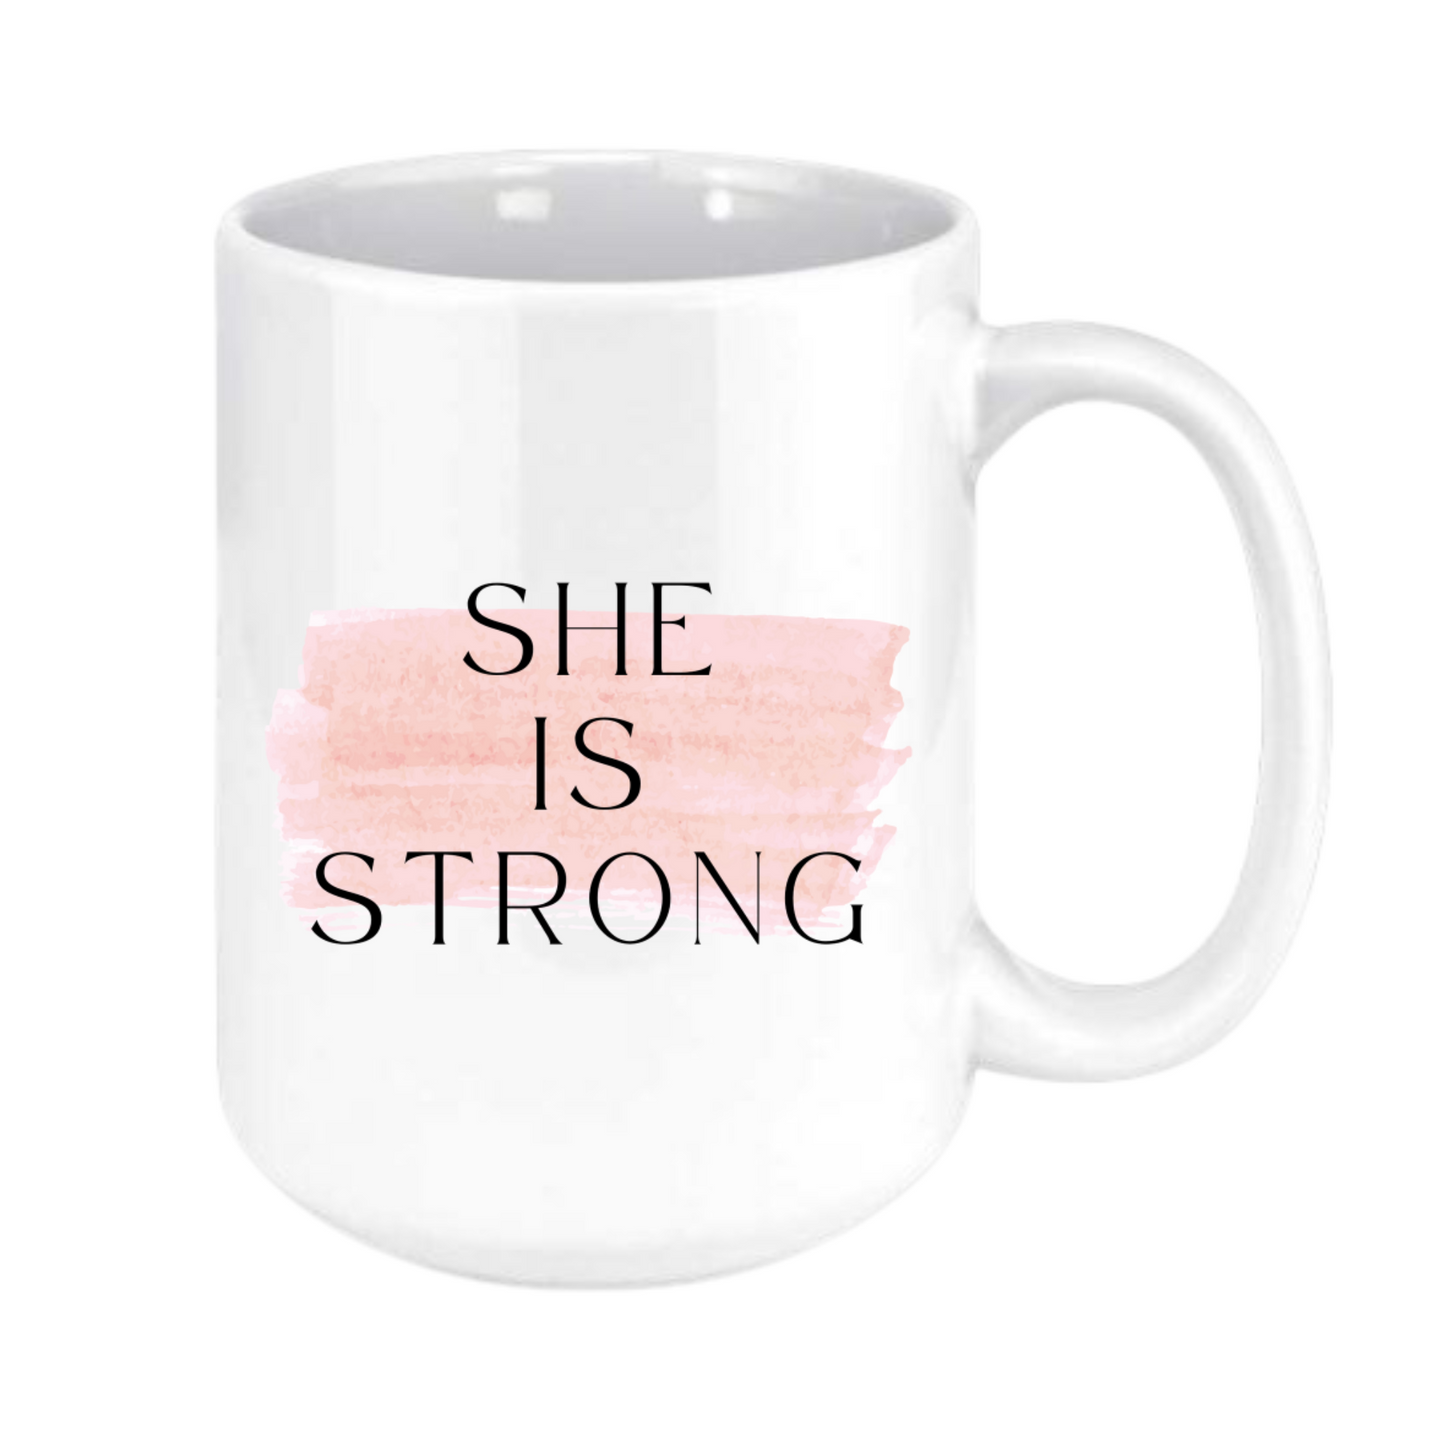 she is strong mug